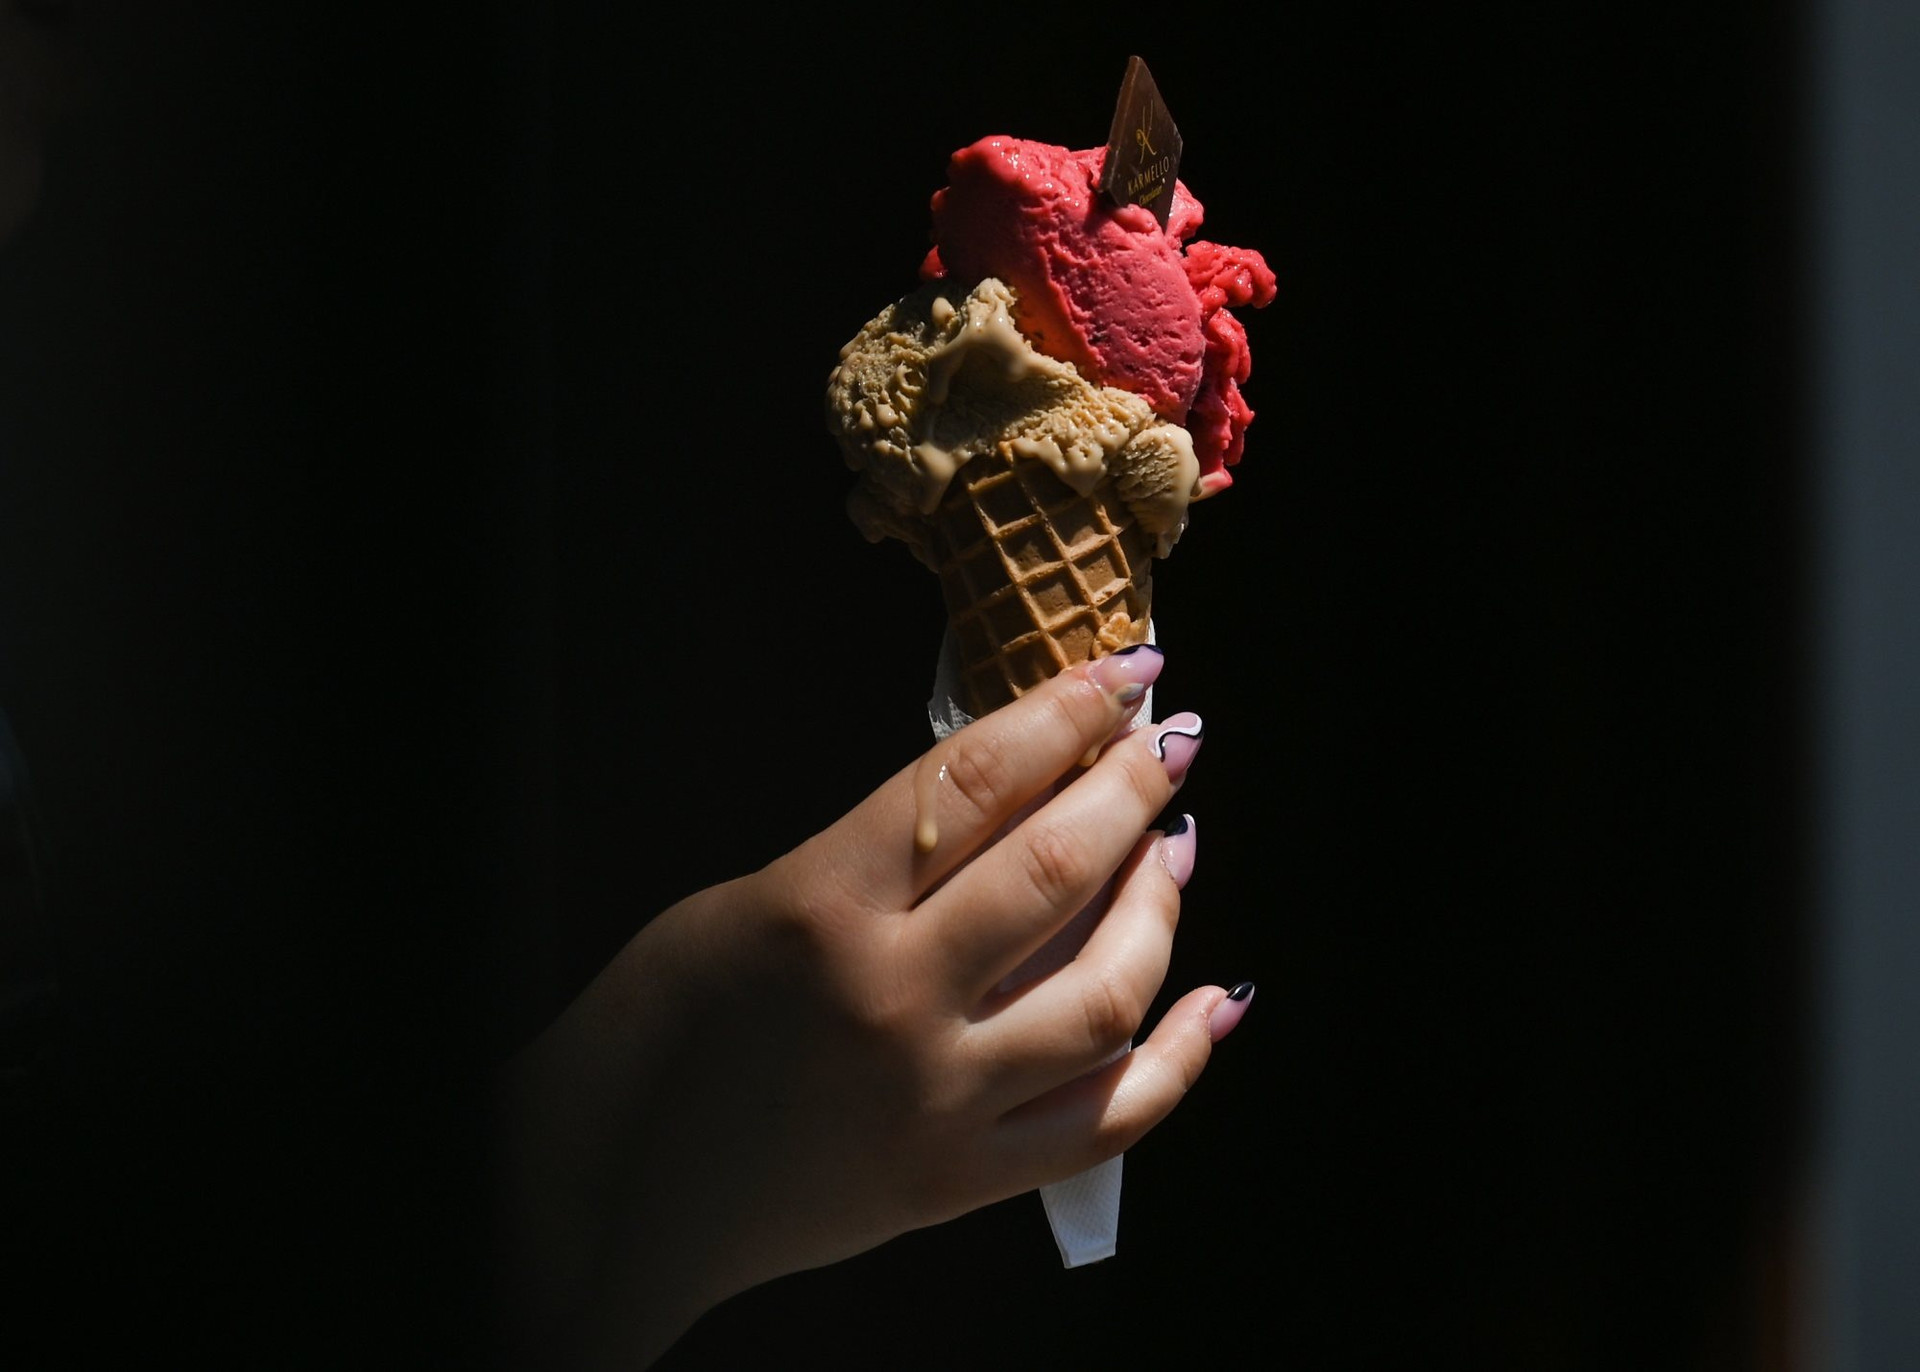 Cơn khát ‘đường’ của châu Âu: Mùa hè buồn với những người dân thích ăn kem - Ảnh 1.